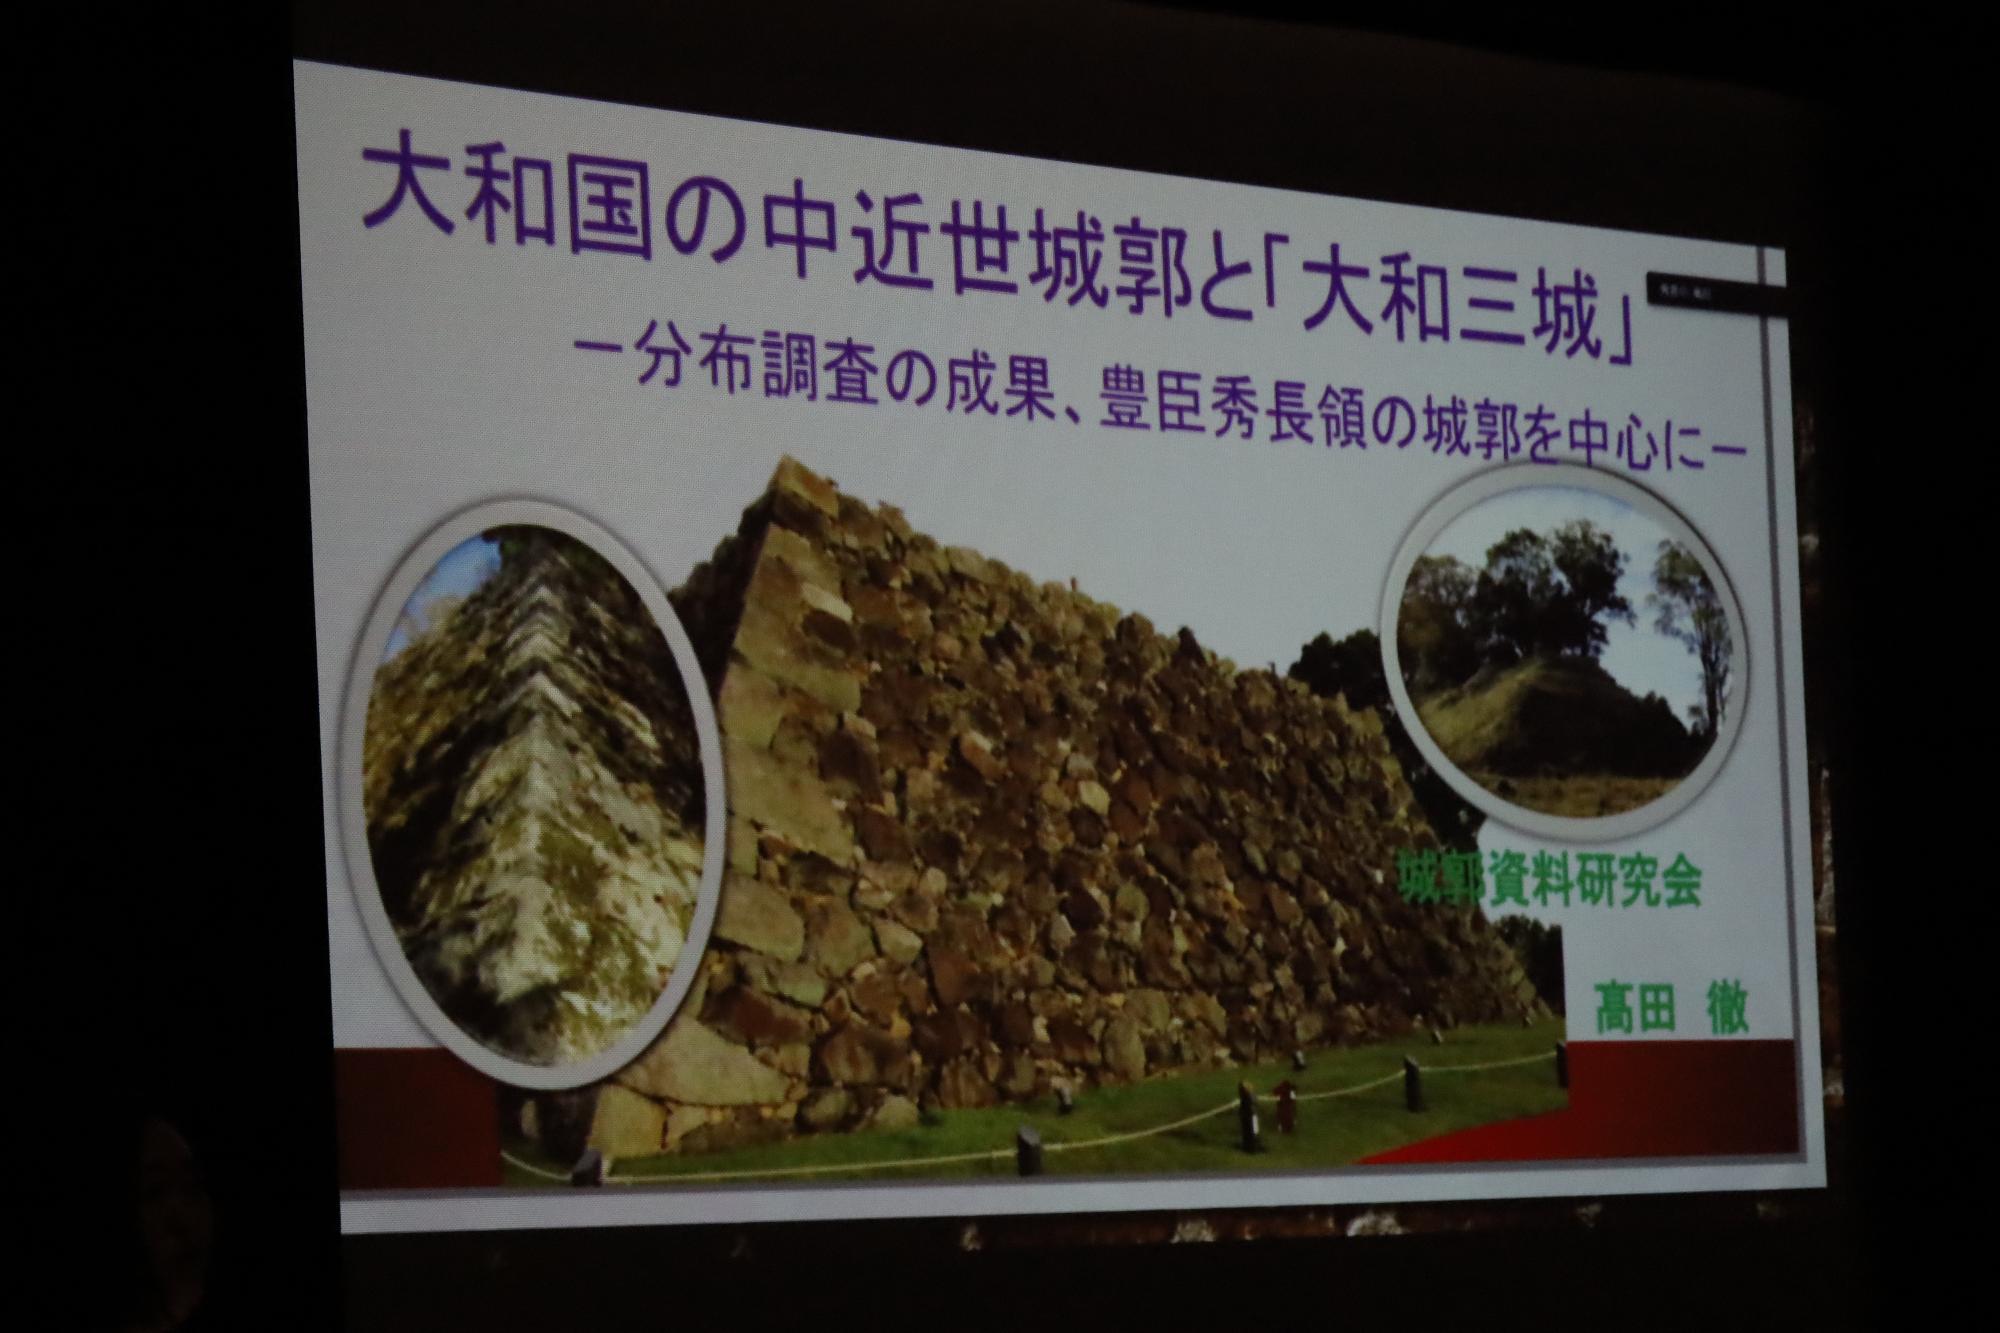 高田徹さんが講演を行ったスライドの画像